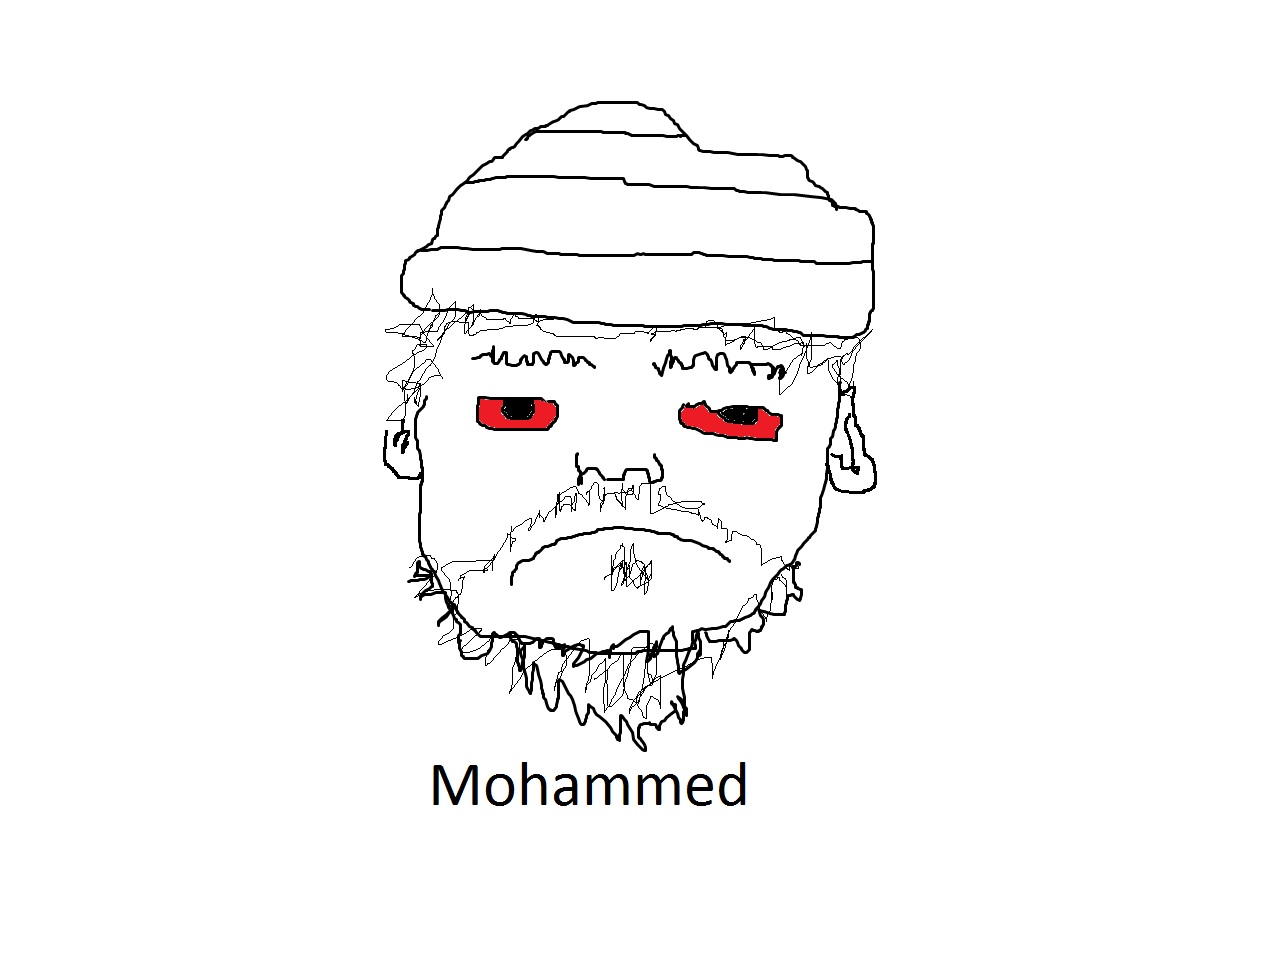 Mohammed.jpg